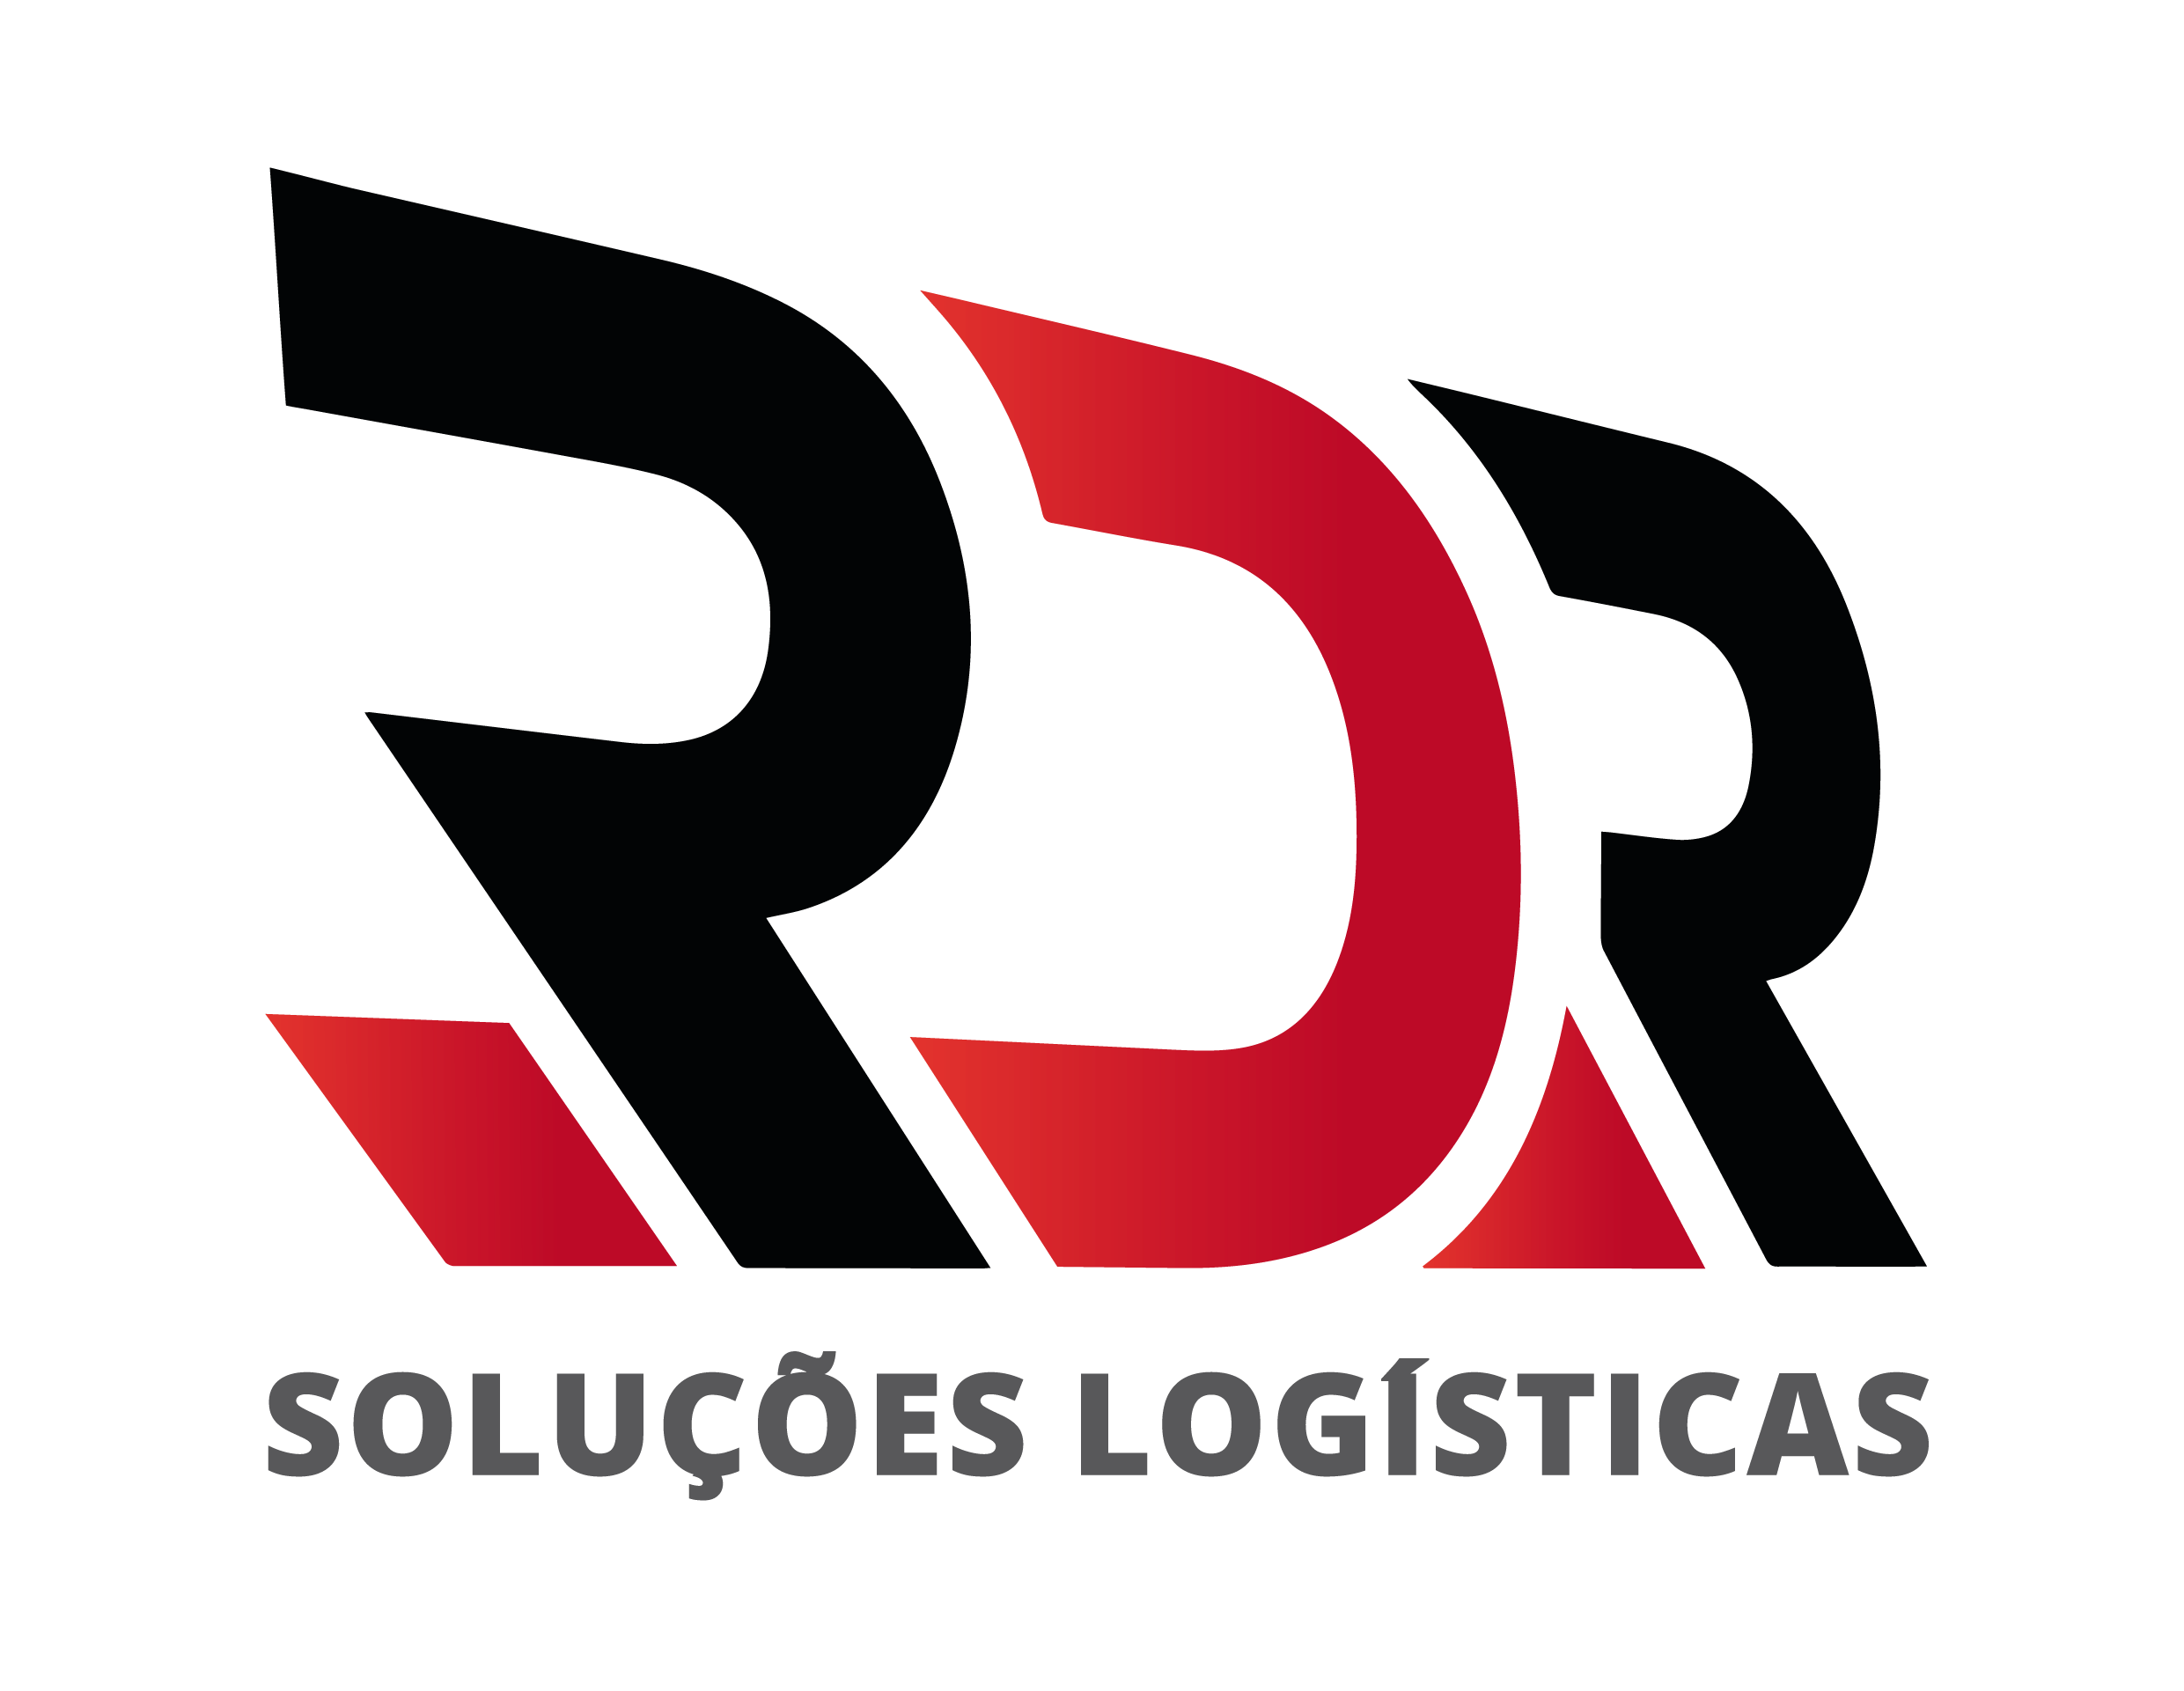 RDR - Soluções Logisticas